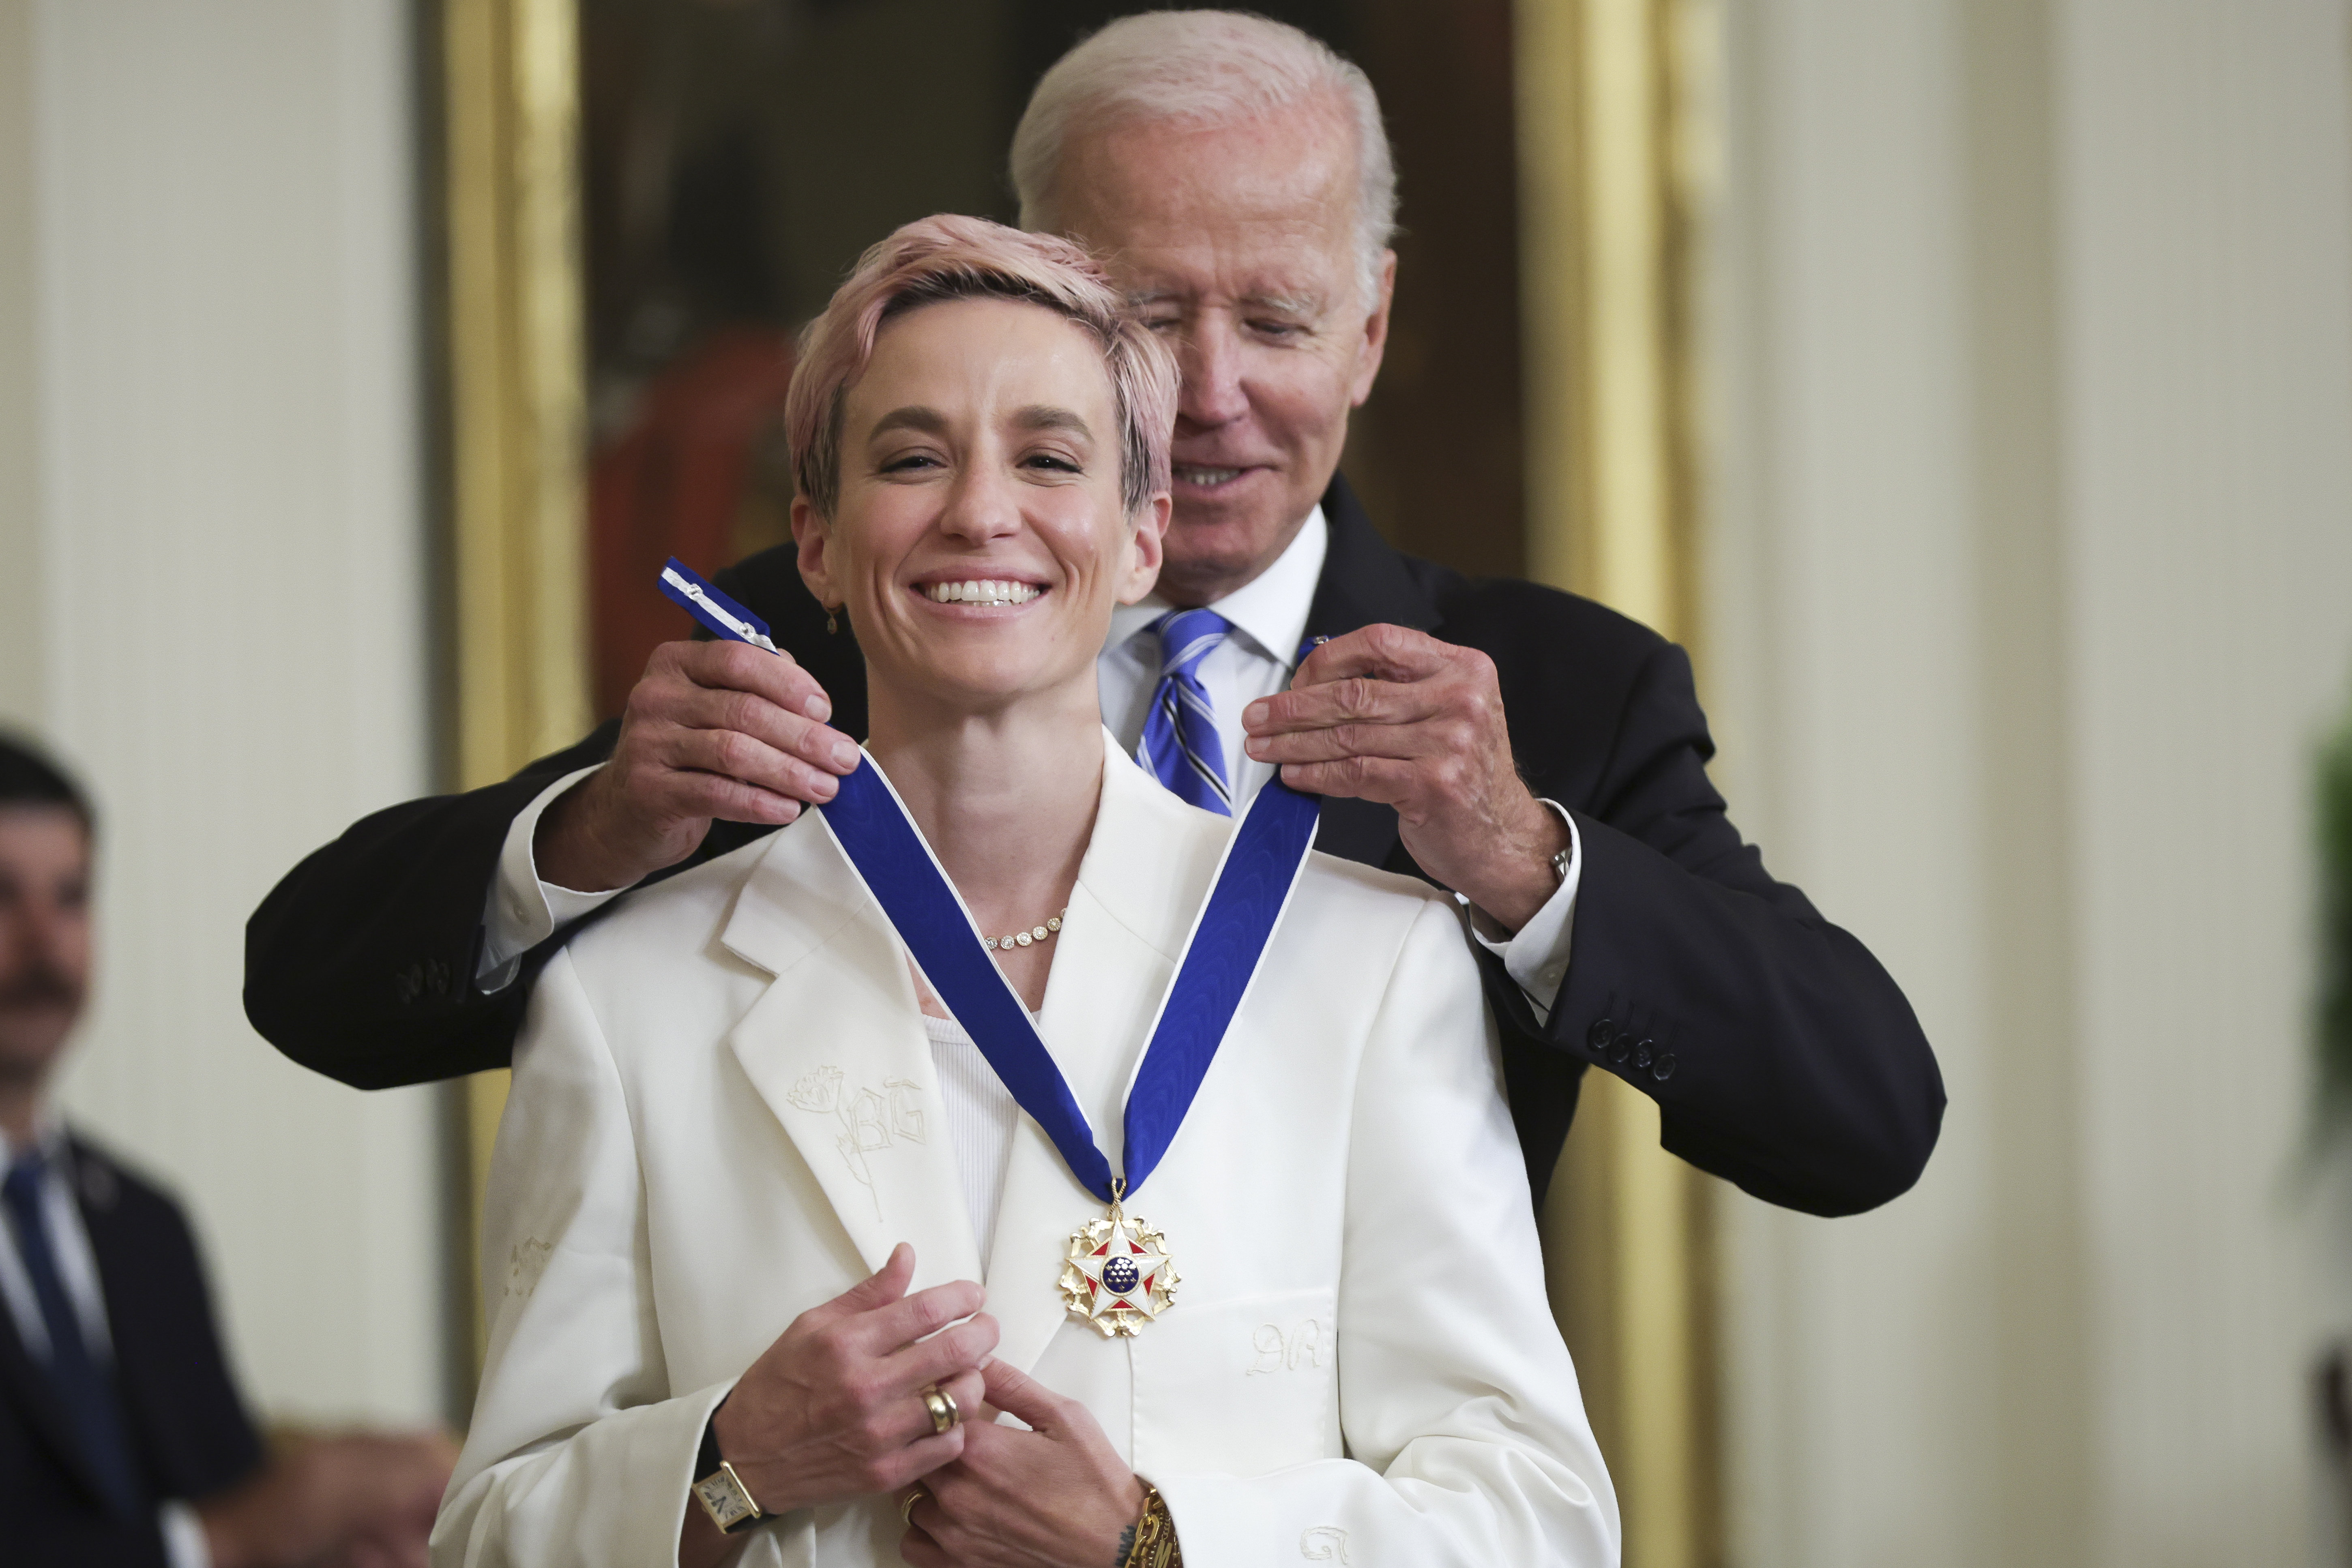 President Biden awards the Presidential Medal of Freedom to Megan Rapinoe